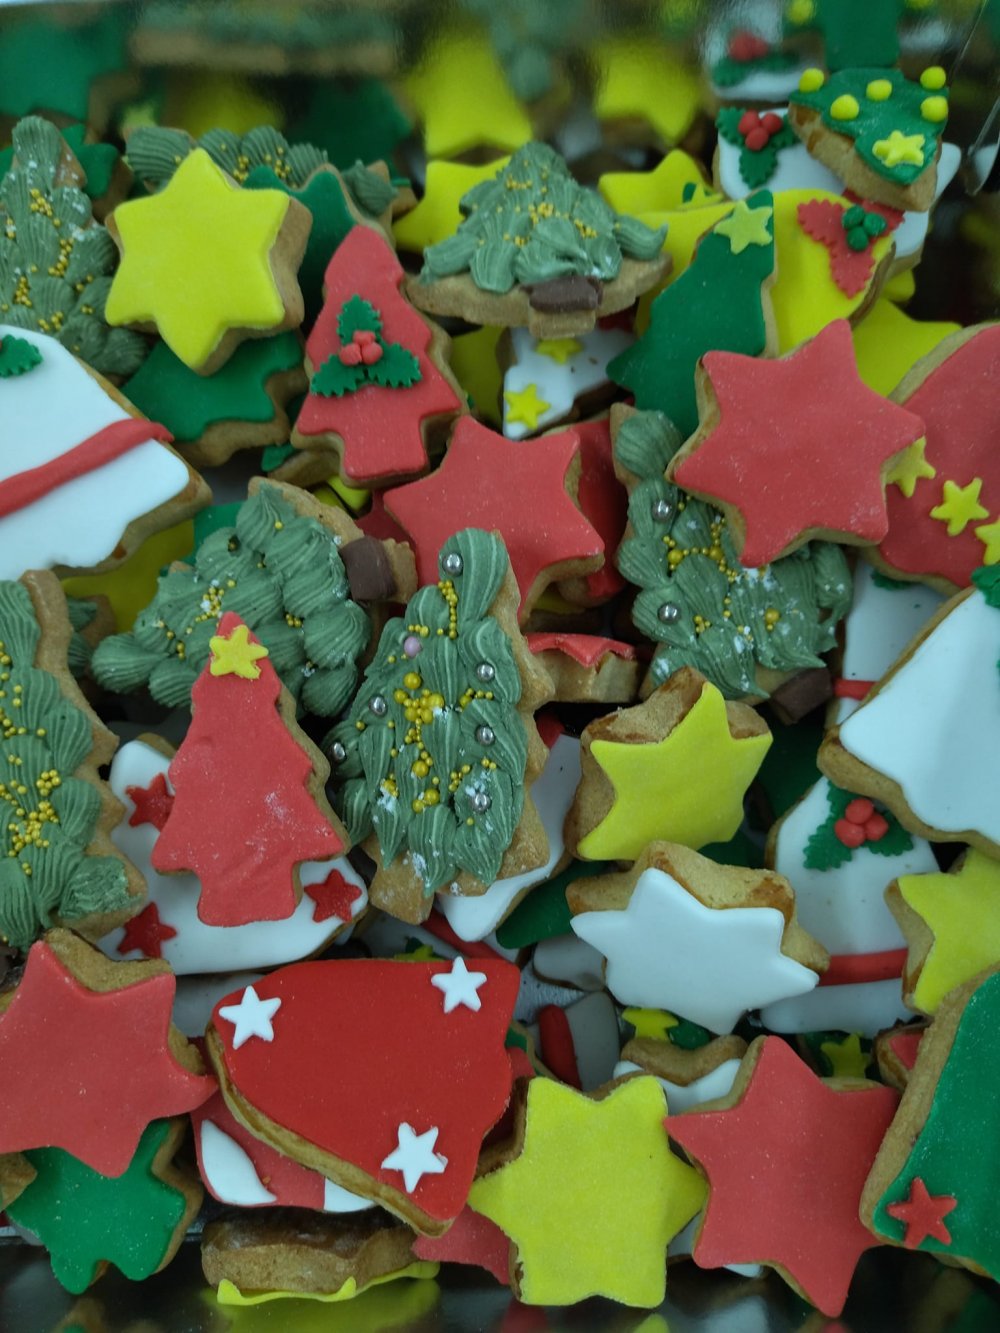 Χριστουγεννιάτικες λιχουδιές από τους Σπουδαστές και τους Εκπαιδευτές των Ειδικοτήτων Αρτοποιίας - Ζαχαροπλαστικής και Μαγειρικής του ΙΙ